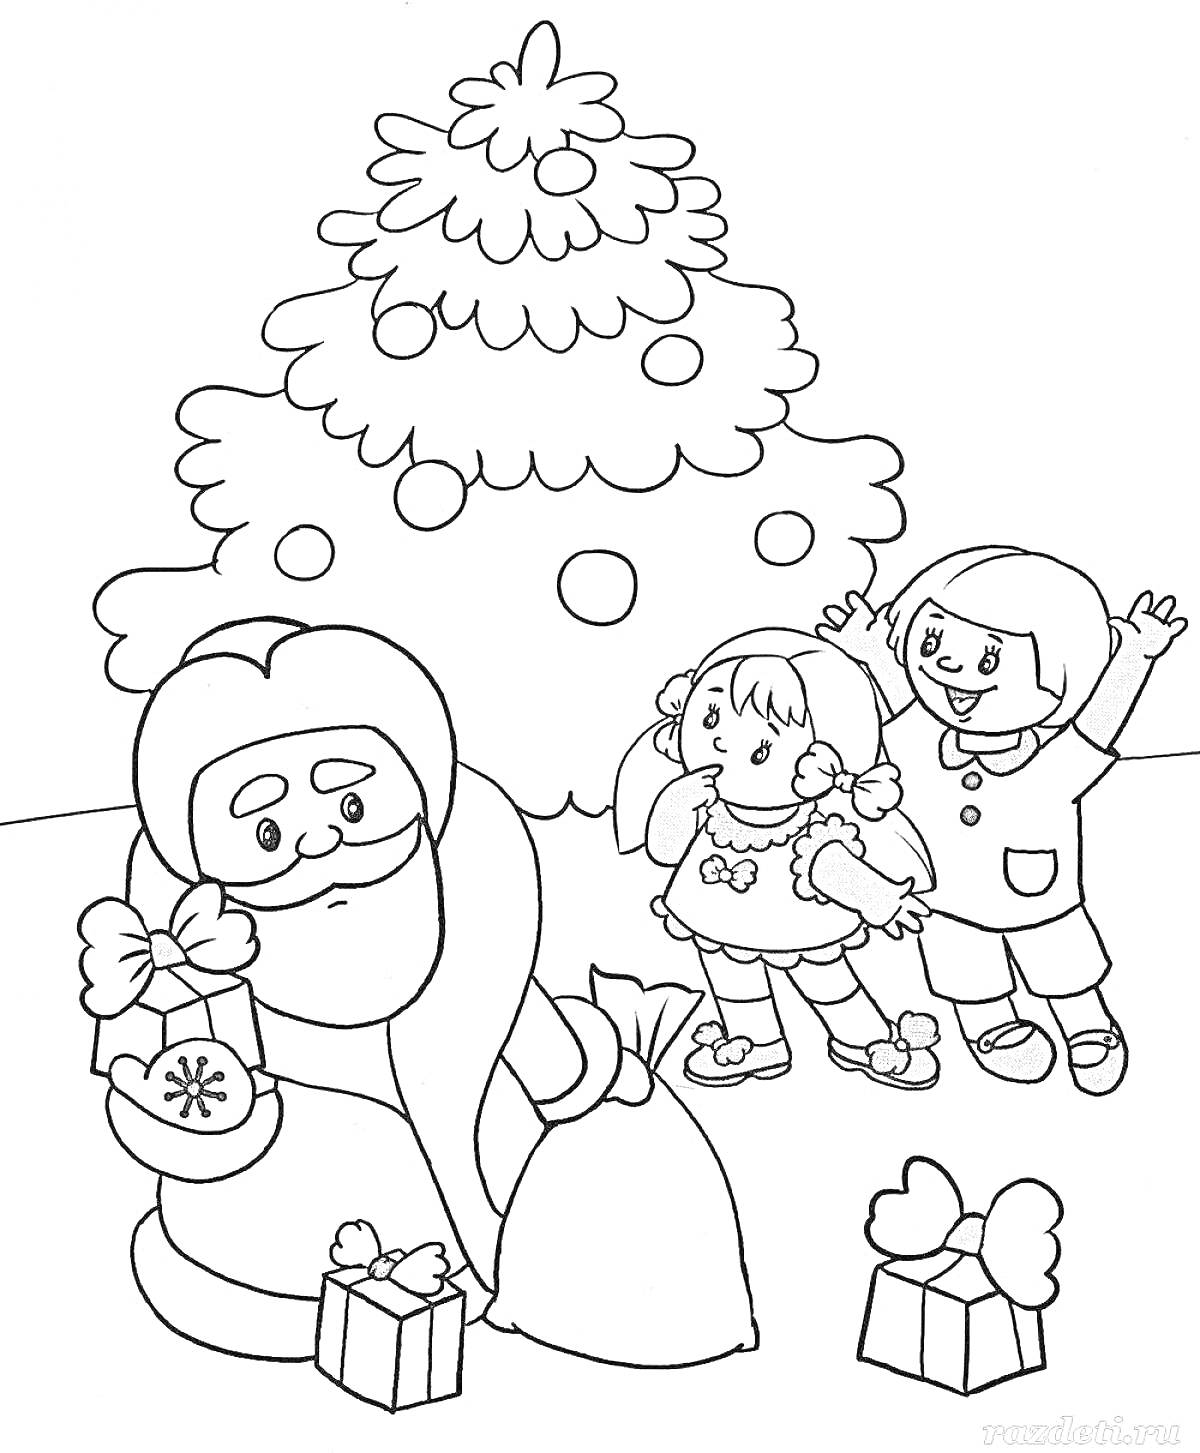 Дед Мороз с подарками, рядом стоят дети возле елки